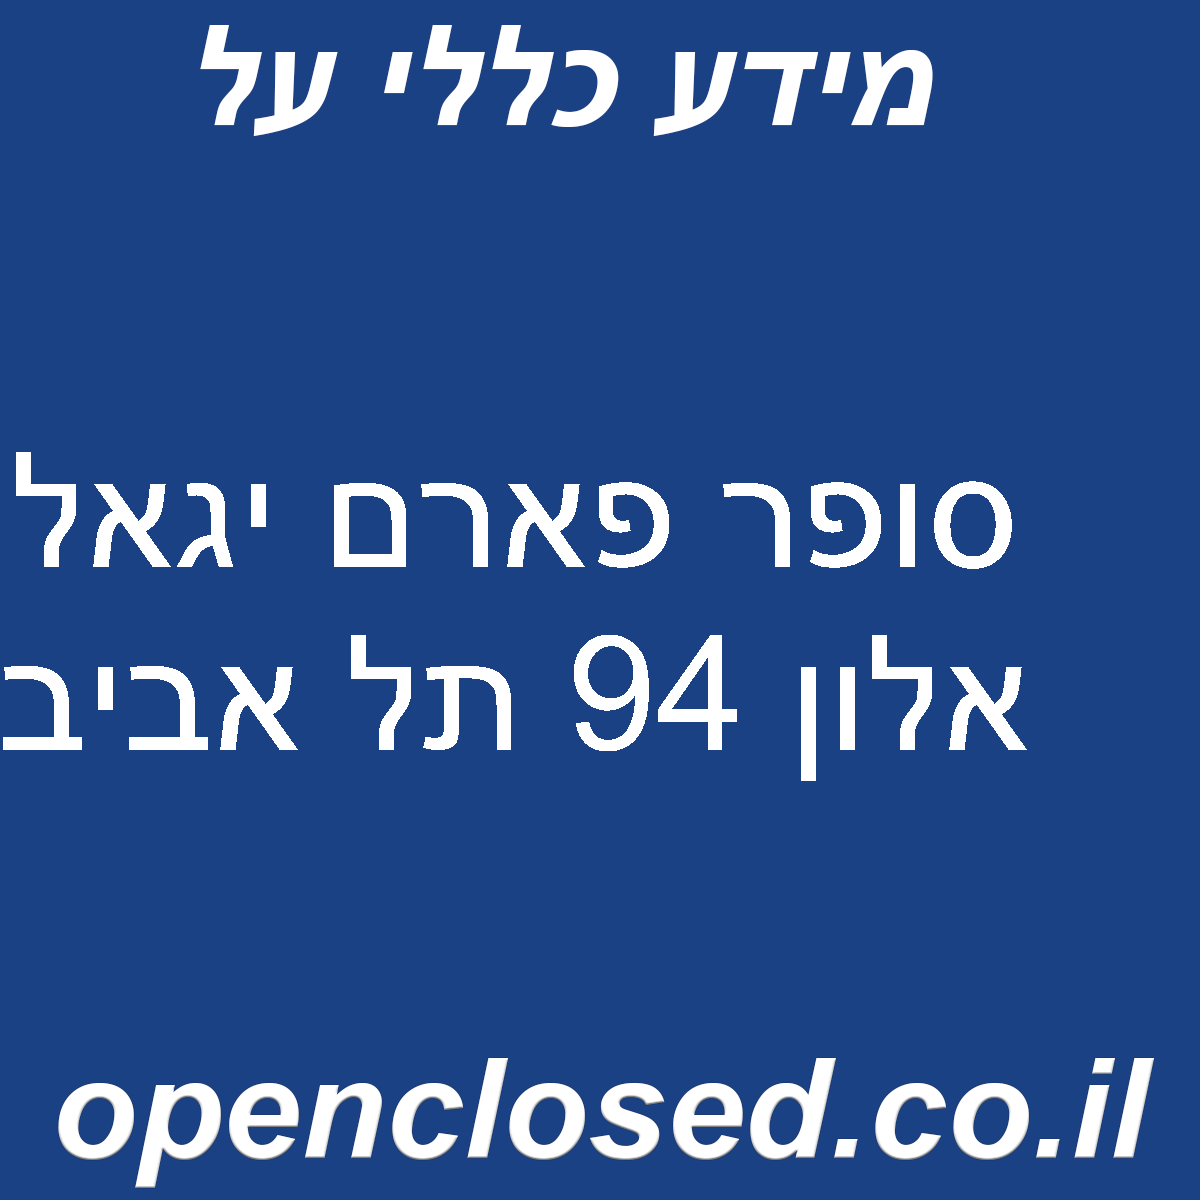 סופר פארם יגאל אלון 94 תל אביב